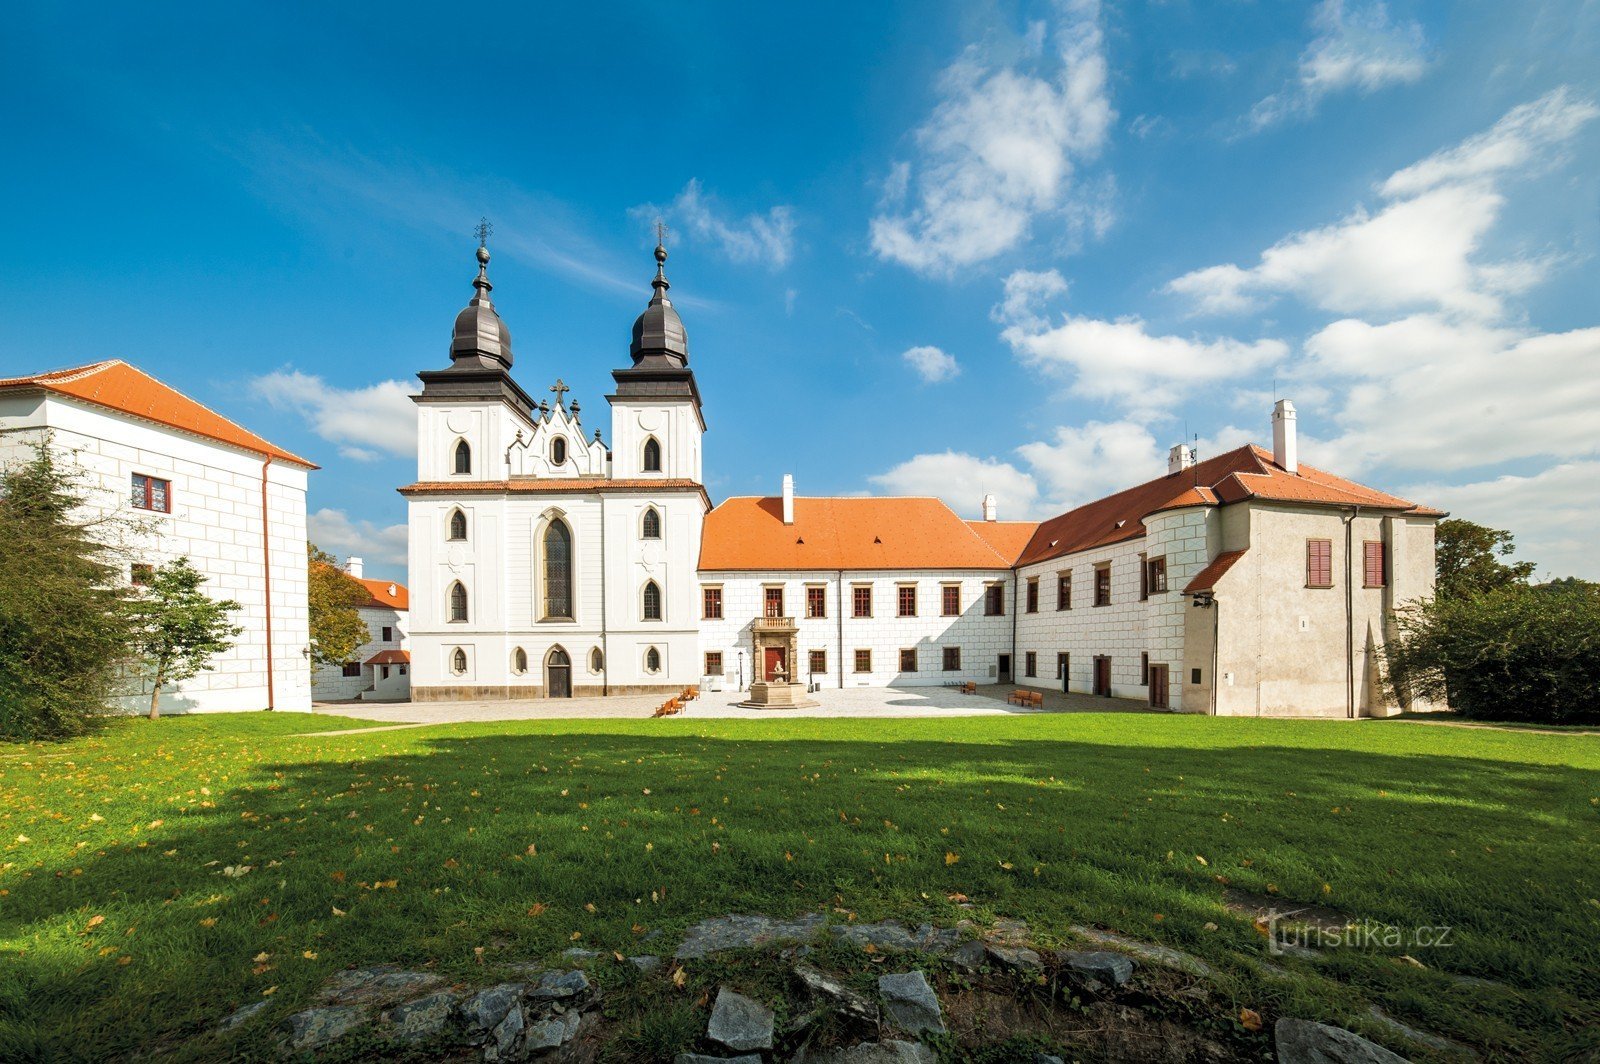 Třebíč Castle presents a novelty – costumed tours